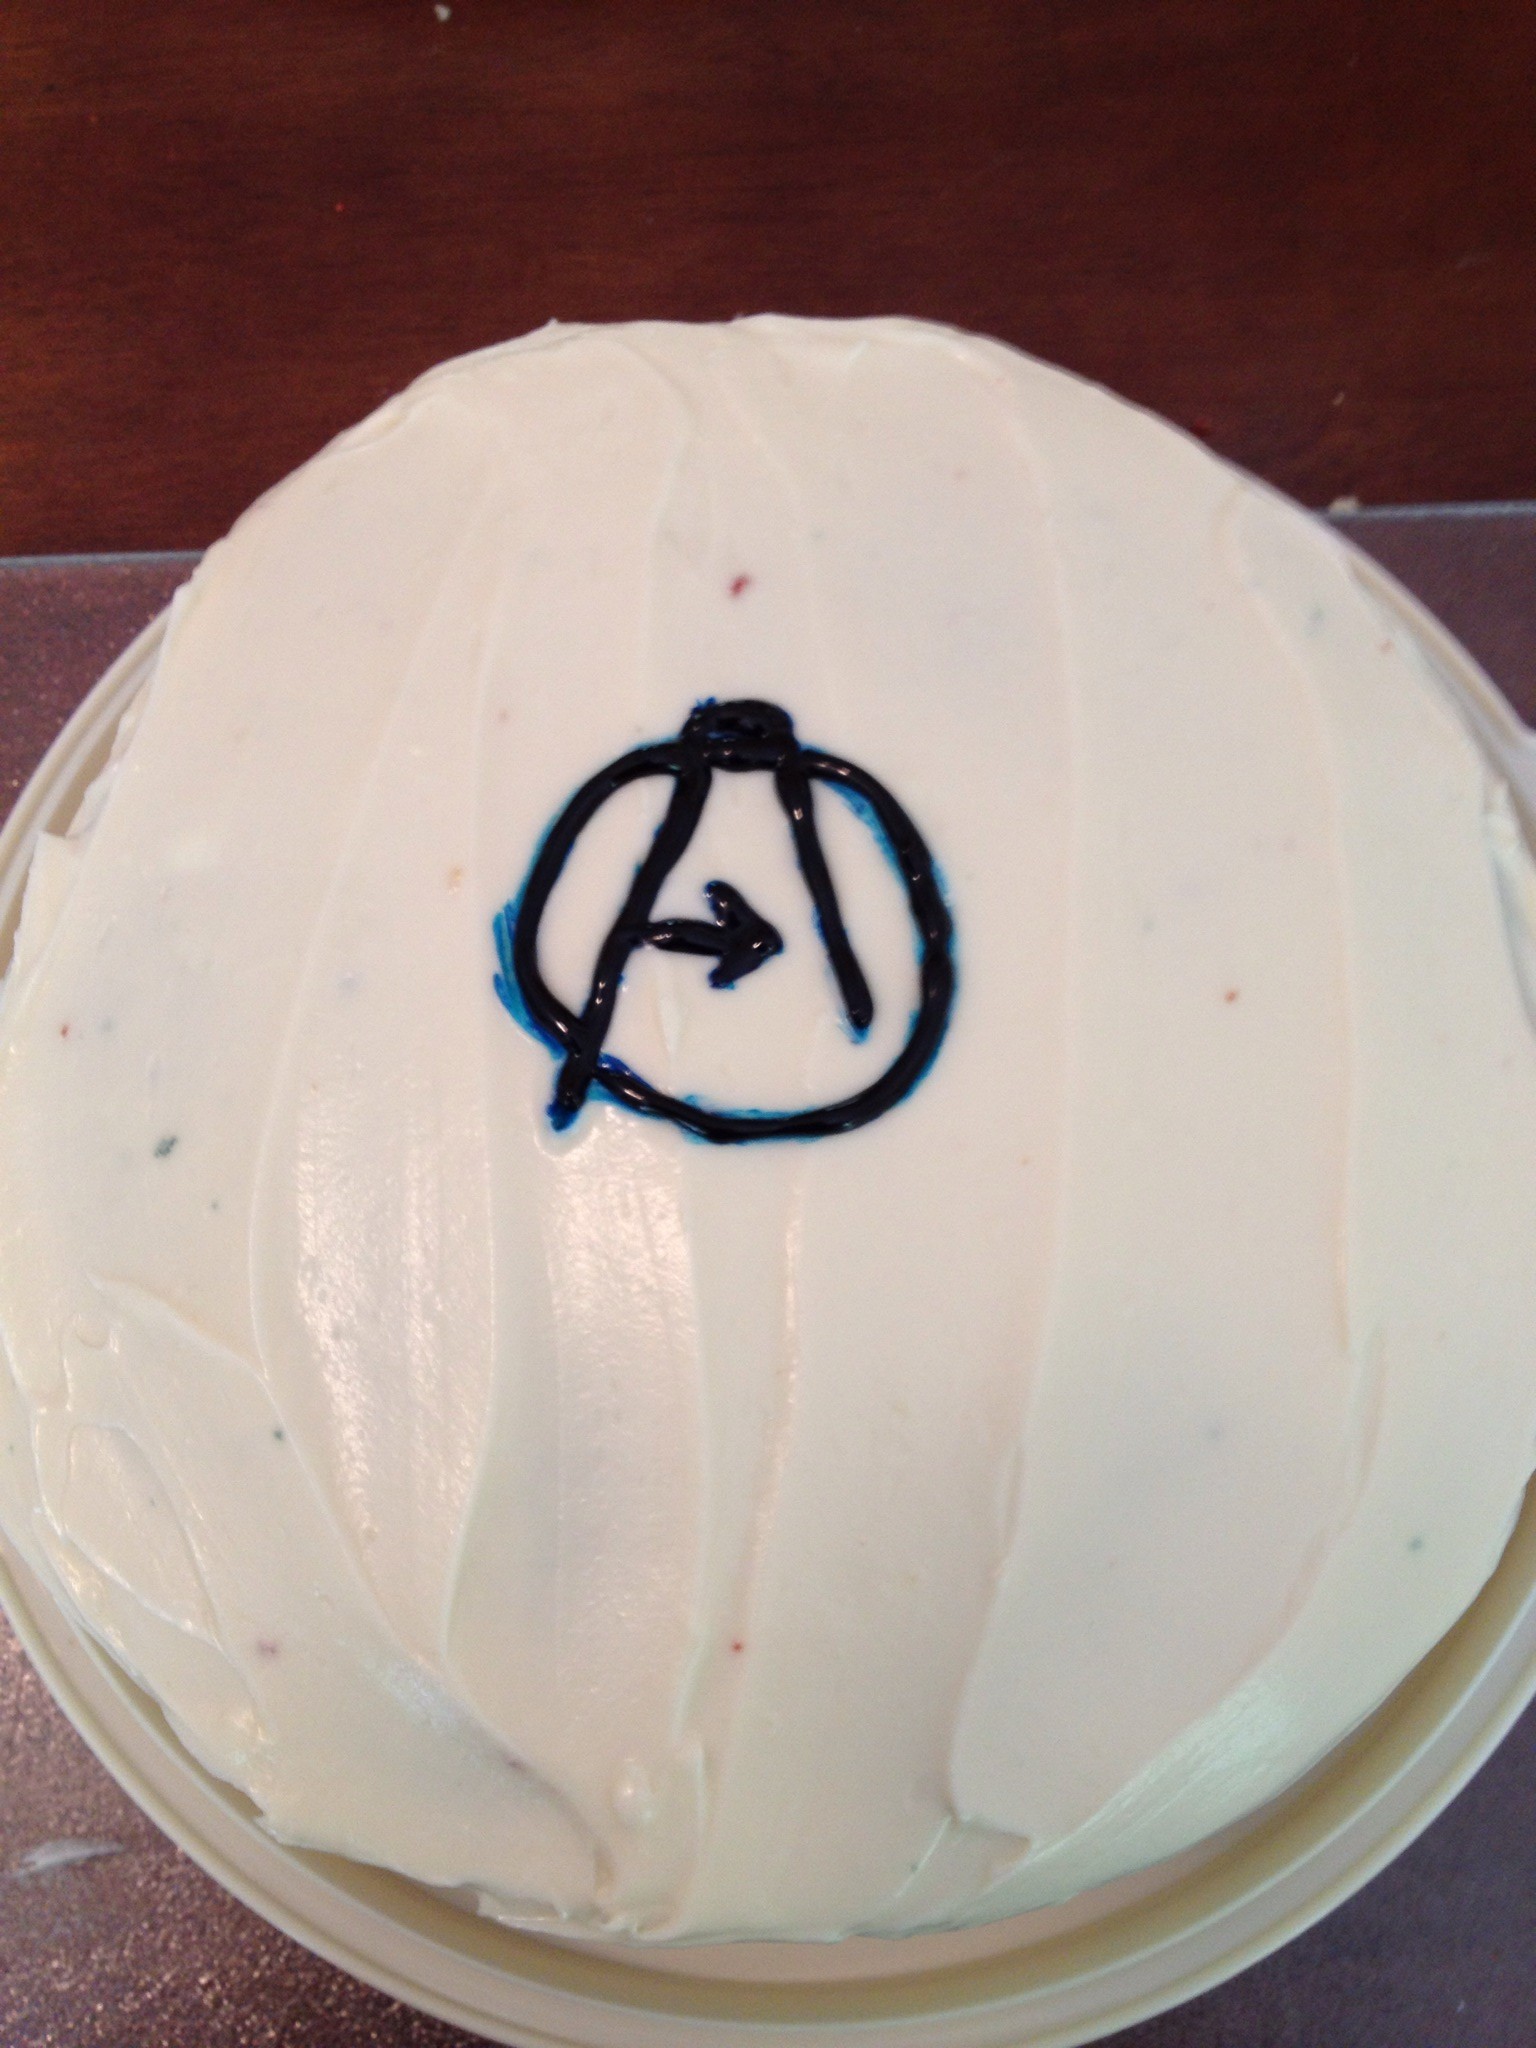 Avengers assemble...for cake!